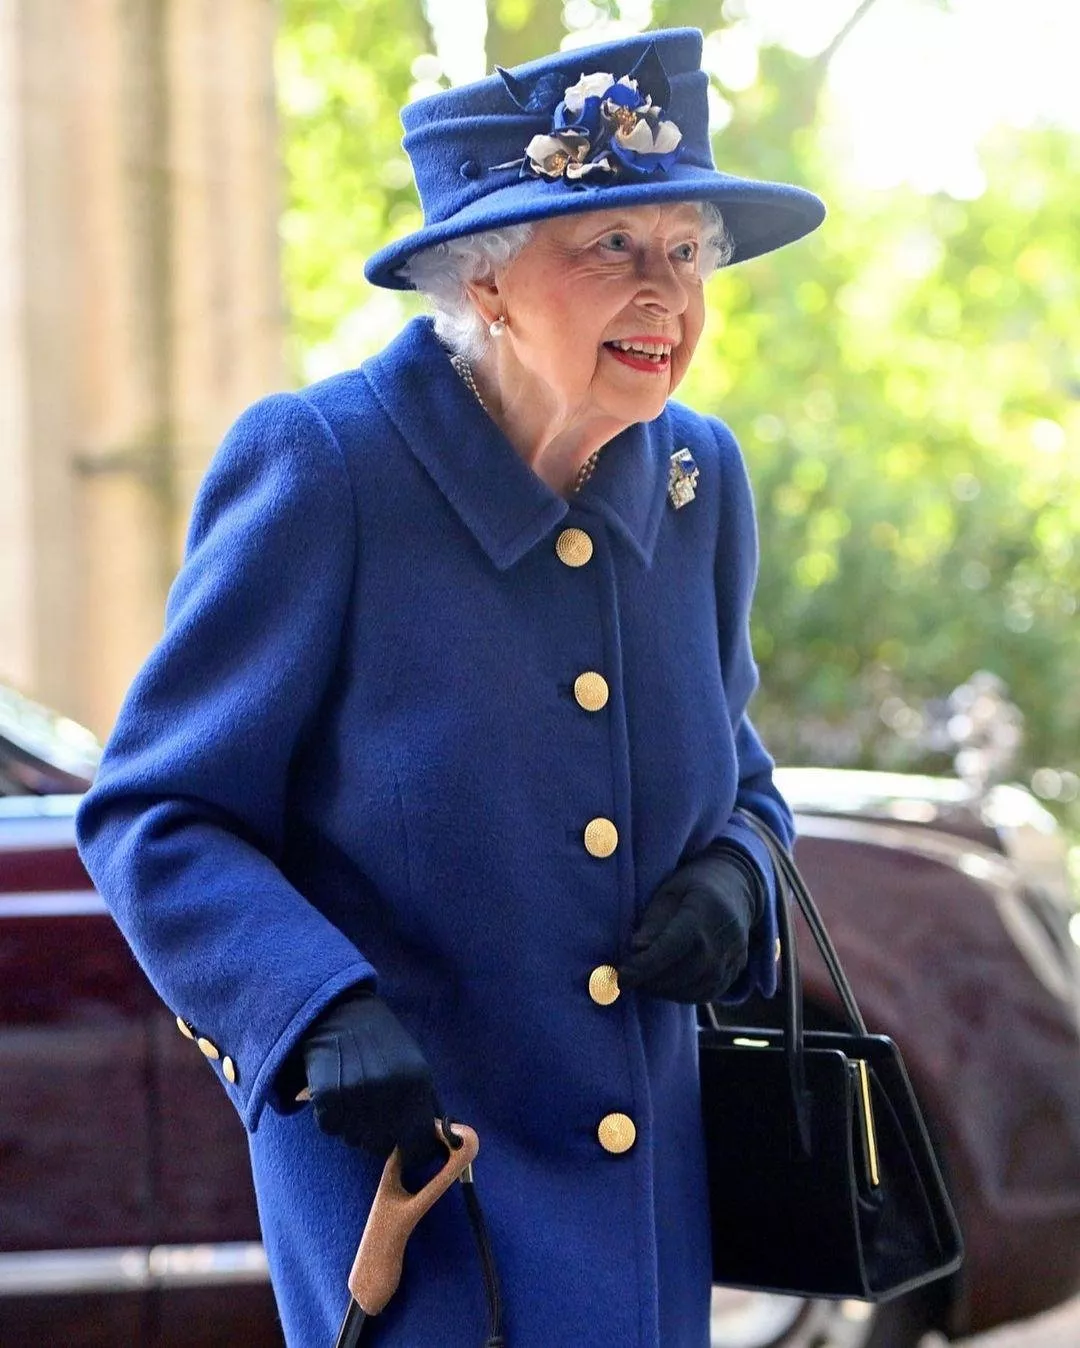 للمرّة الأولى منذ 17 عام، الملكة اليزابيث تحمل العصا في آخر طلة لها... فما السبب؟